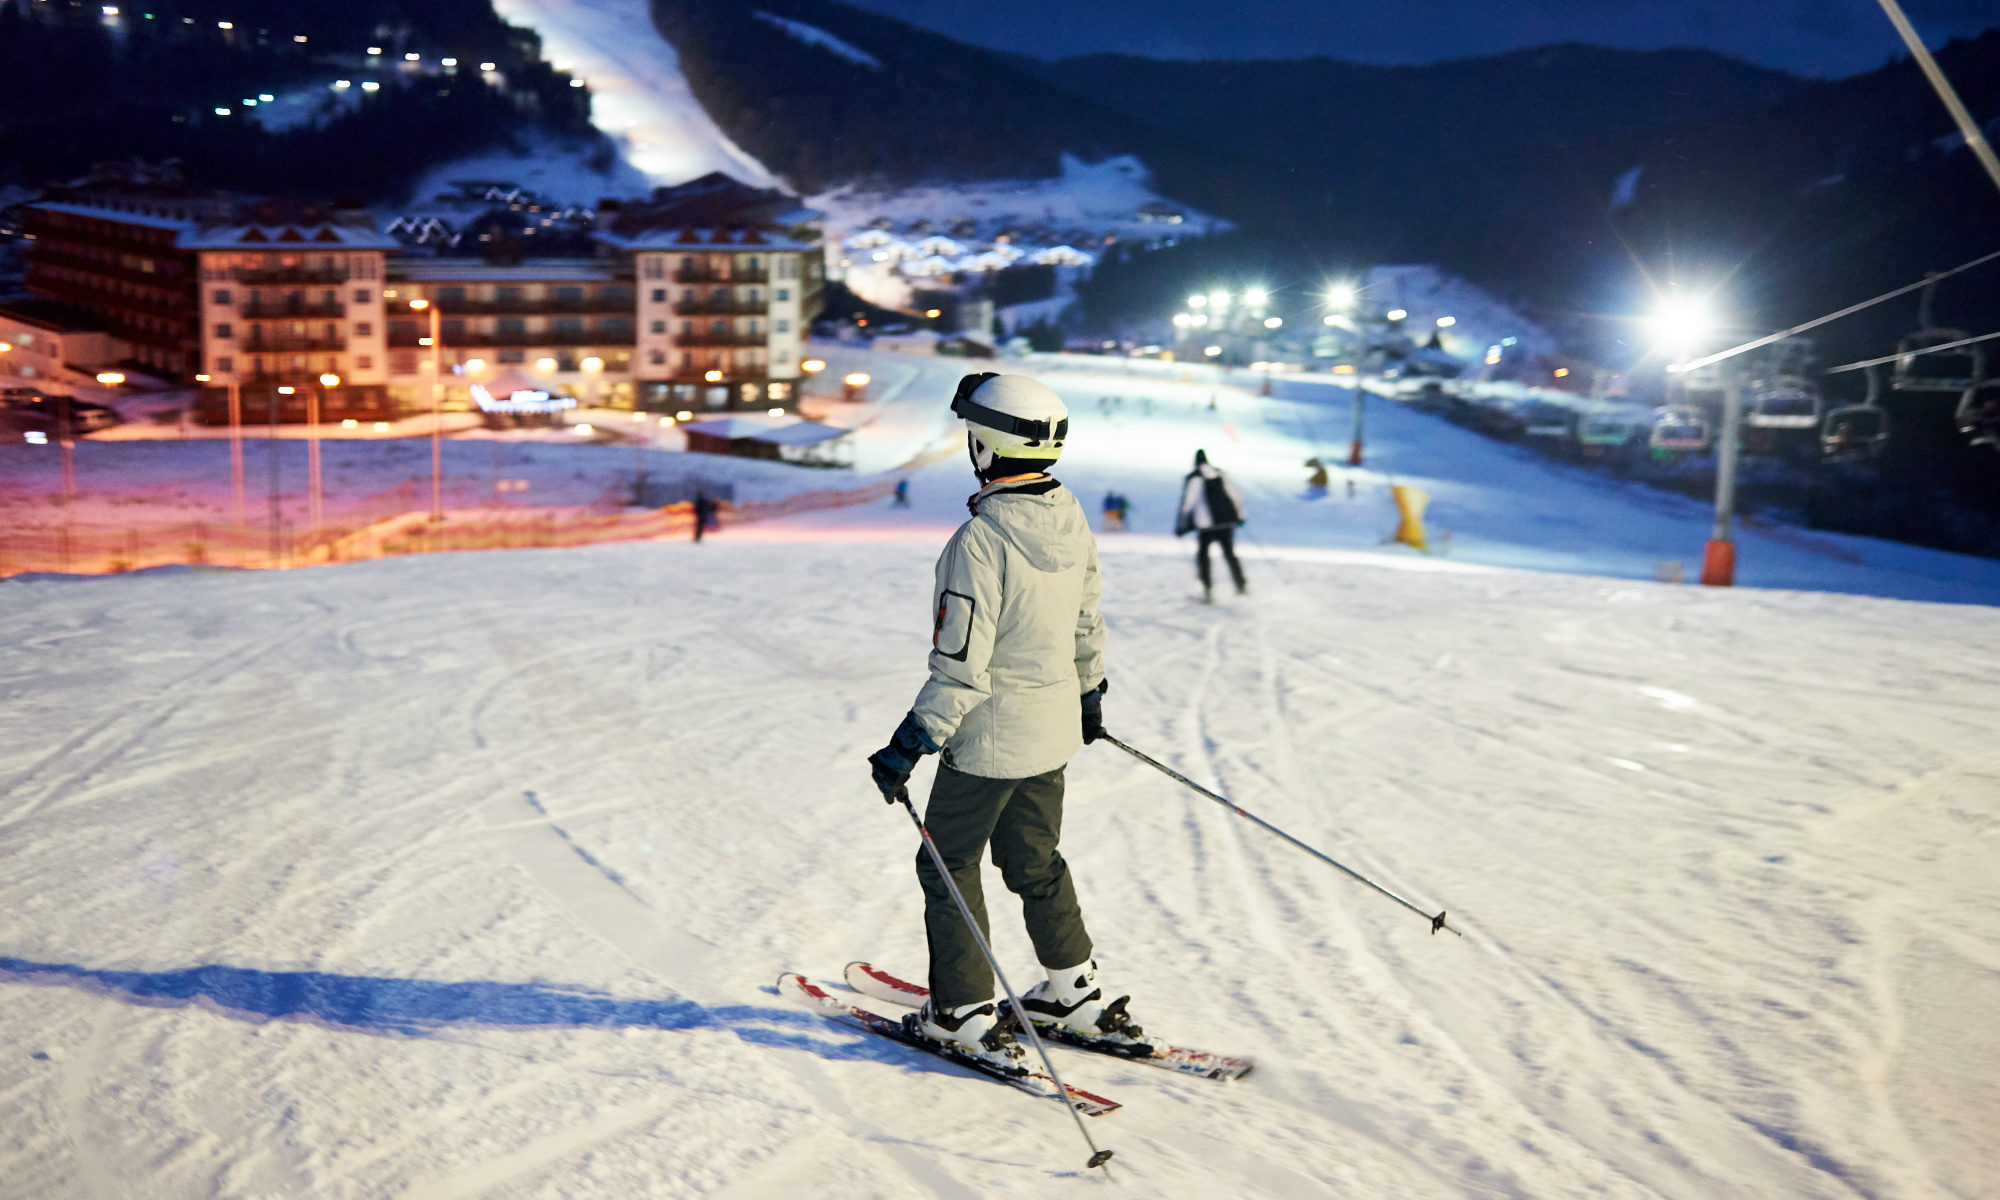 Uno sciatore in procinto di cominciare la discesa di una pista illuminata di notte.